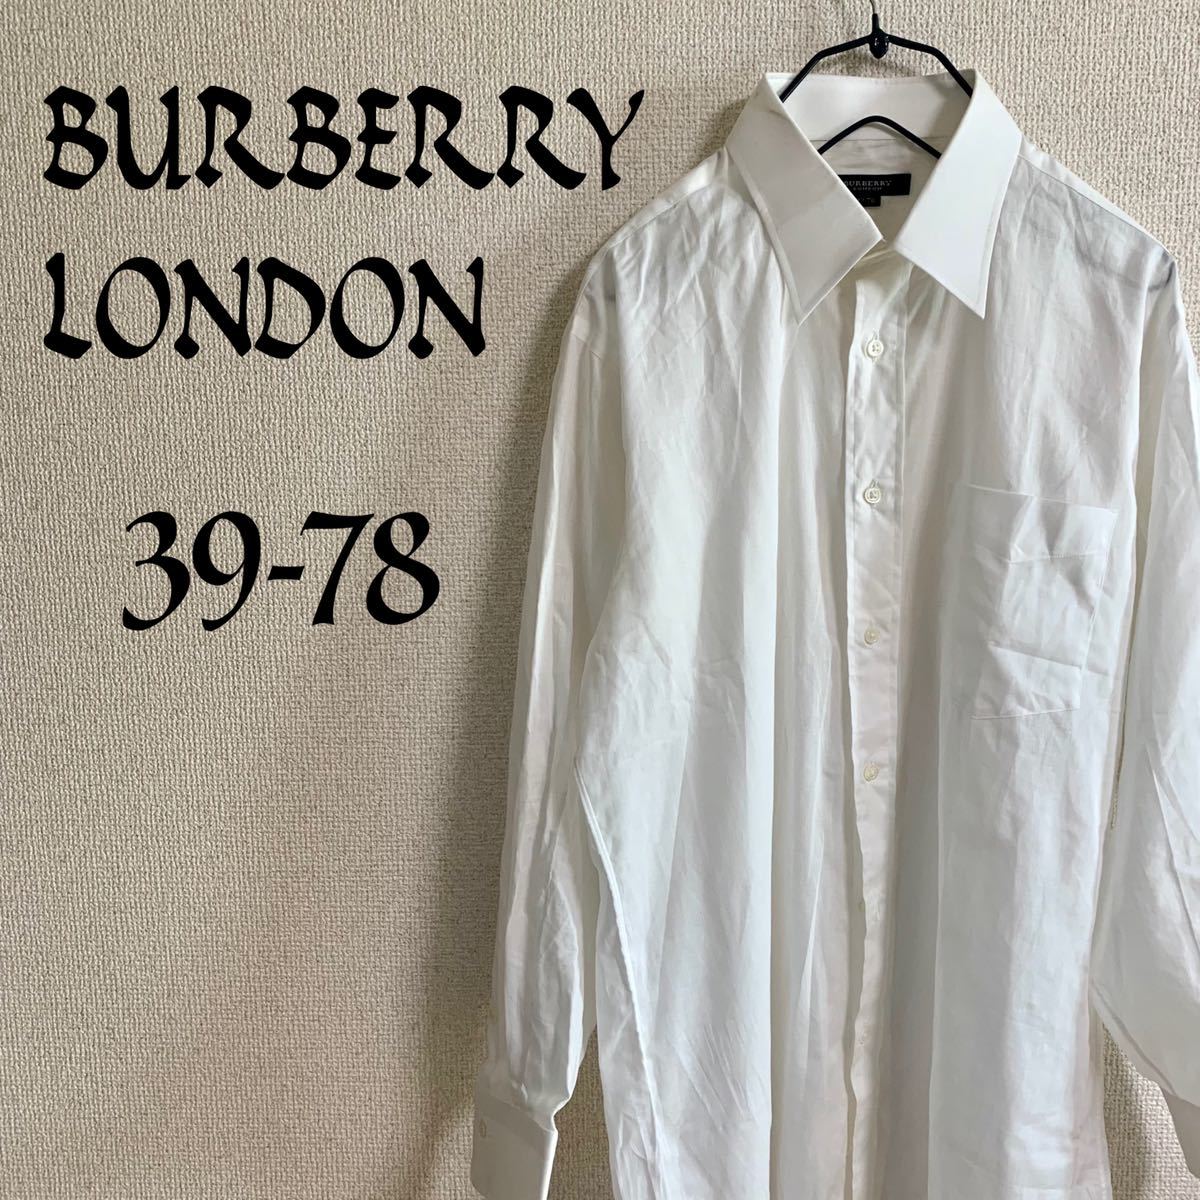 国内正規□ バーバリーロンドン 長袖シャツ 39-78 ホワイト Yシャツ